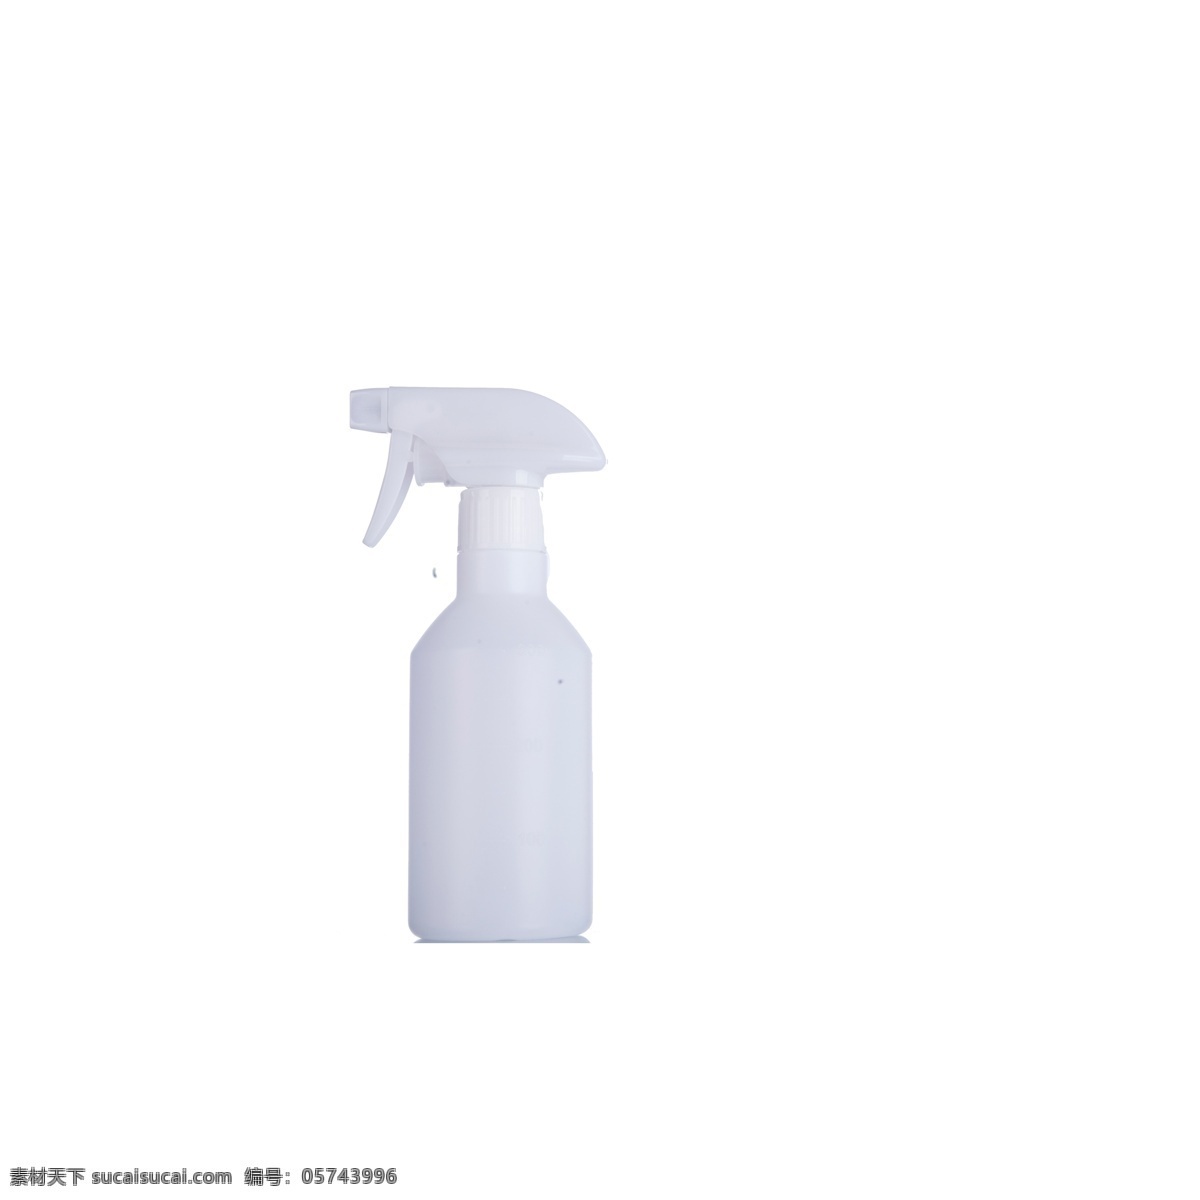 白色 清洁用品 免 抠 图 洗浴用品 卫生用品 白色的瓶子 洗发水 喷雾 塑料瓶子 白色清洁用品 免抠图